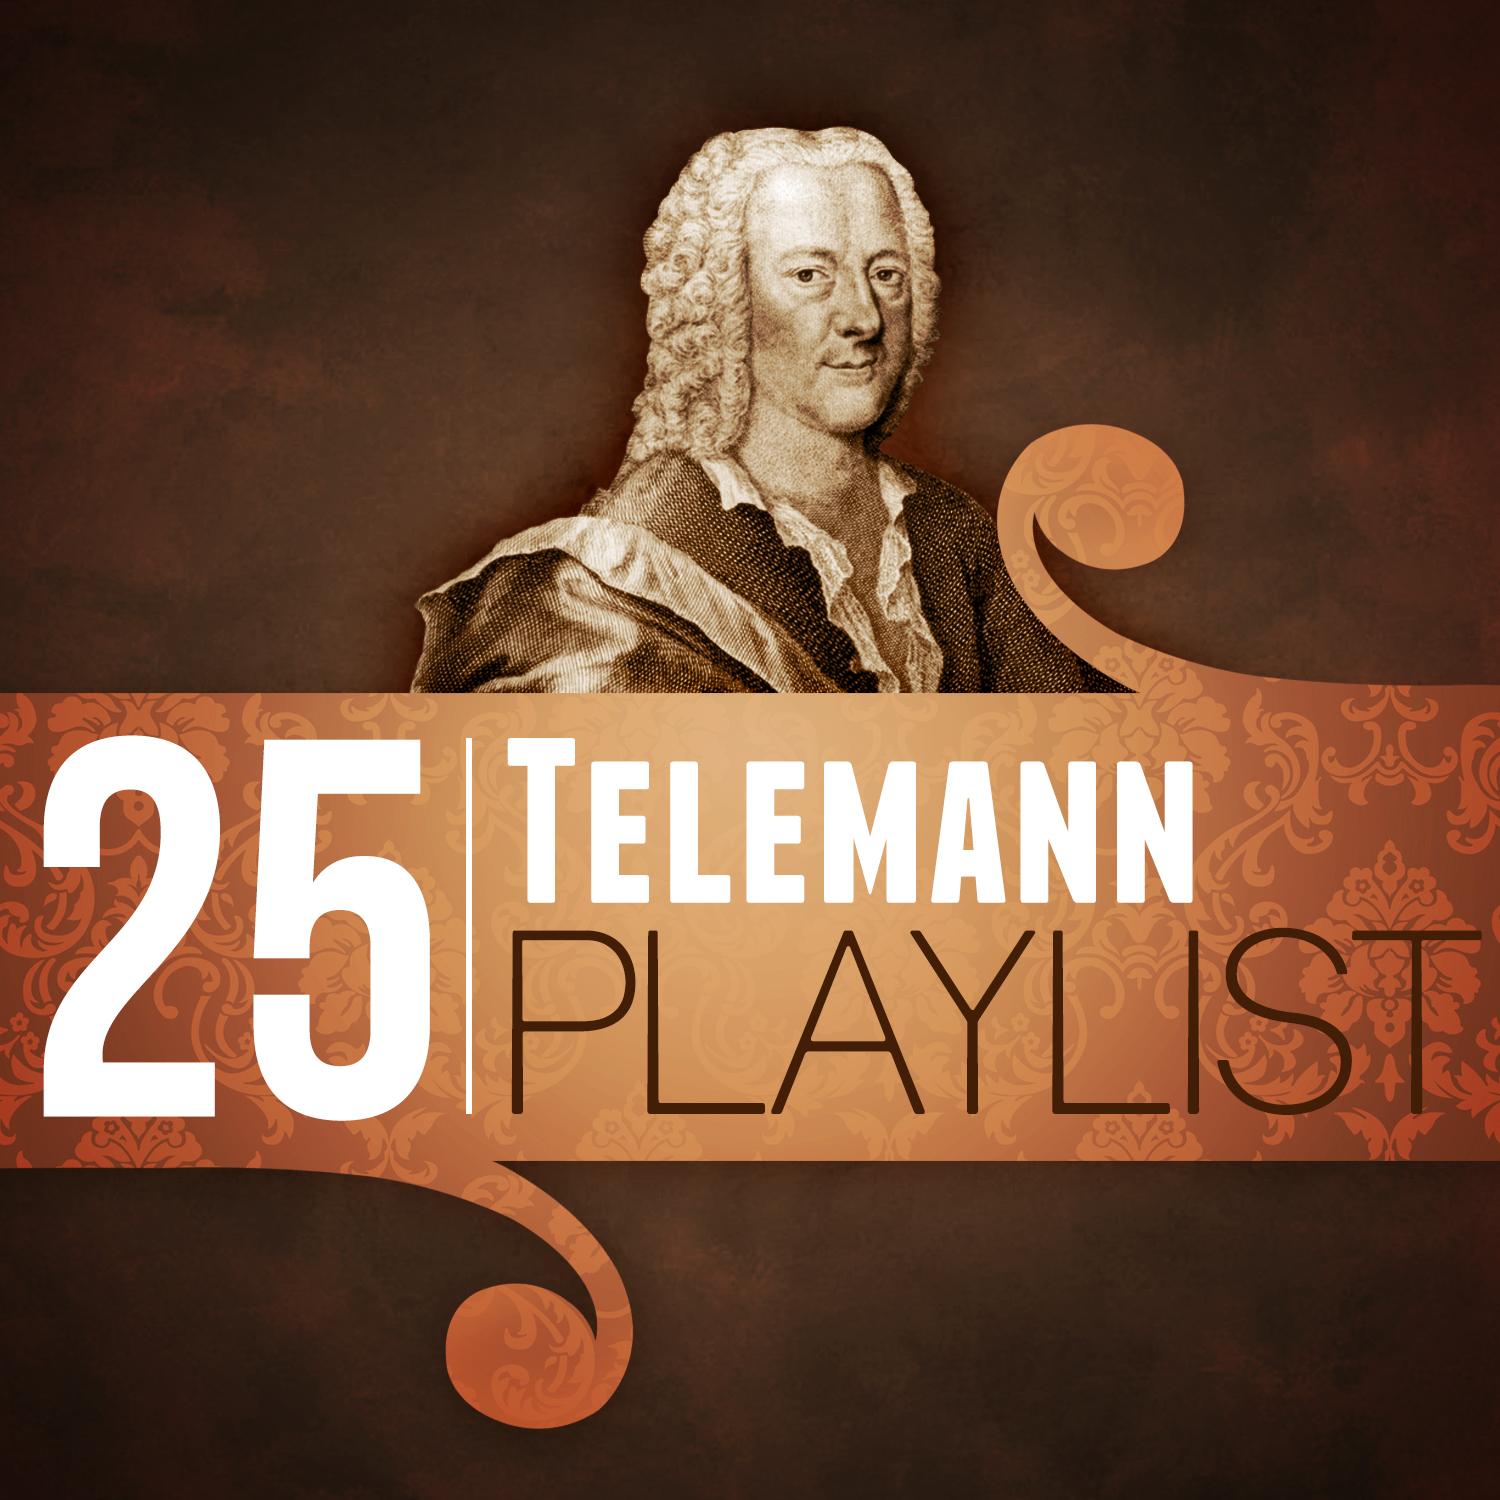 25 Telemann Playlist